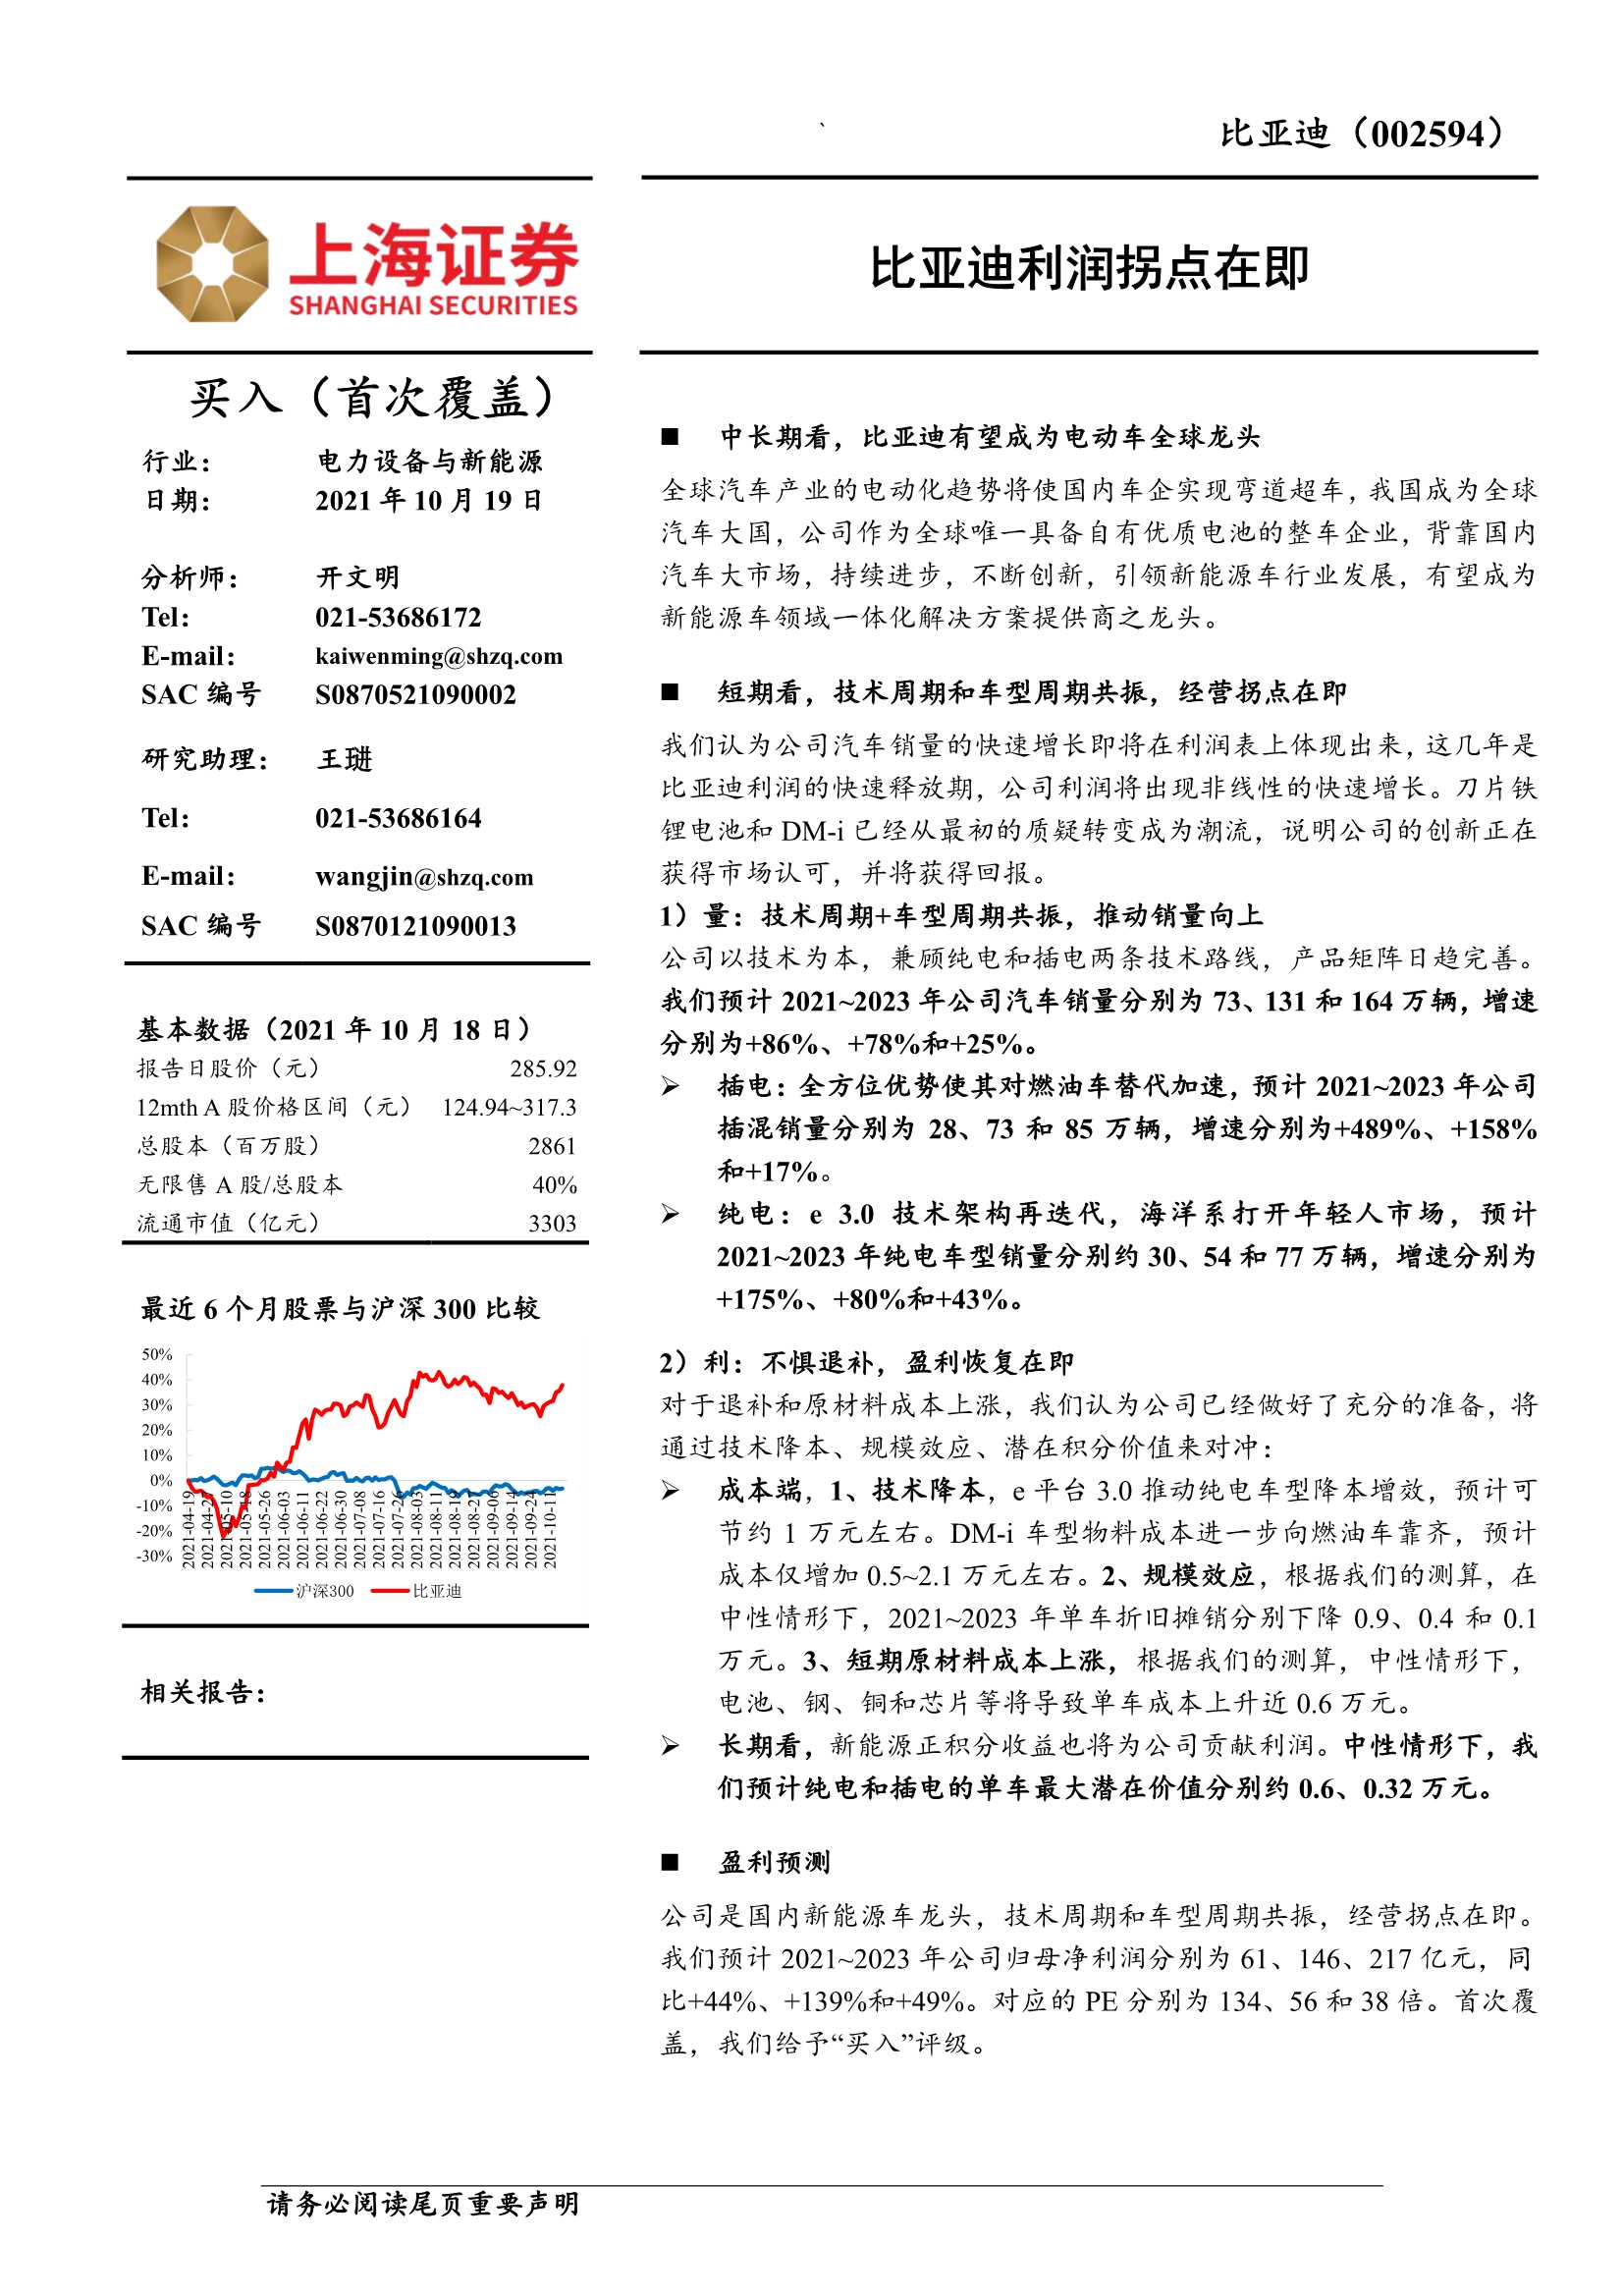 上海证券-比亚迪-002594-比亚迪利润拐点在即-20211019-40页